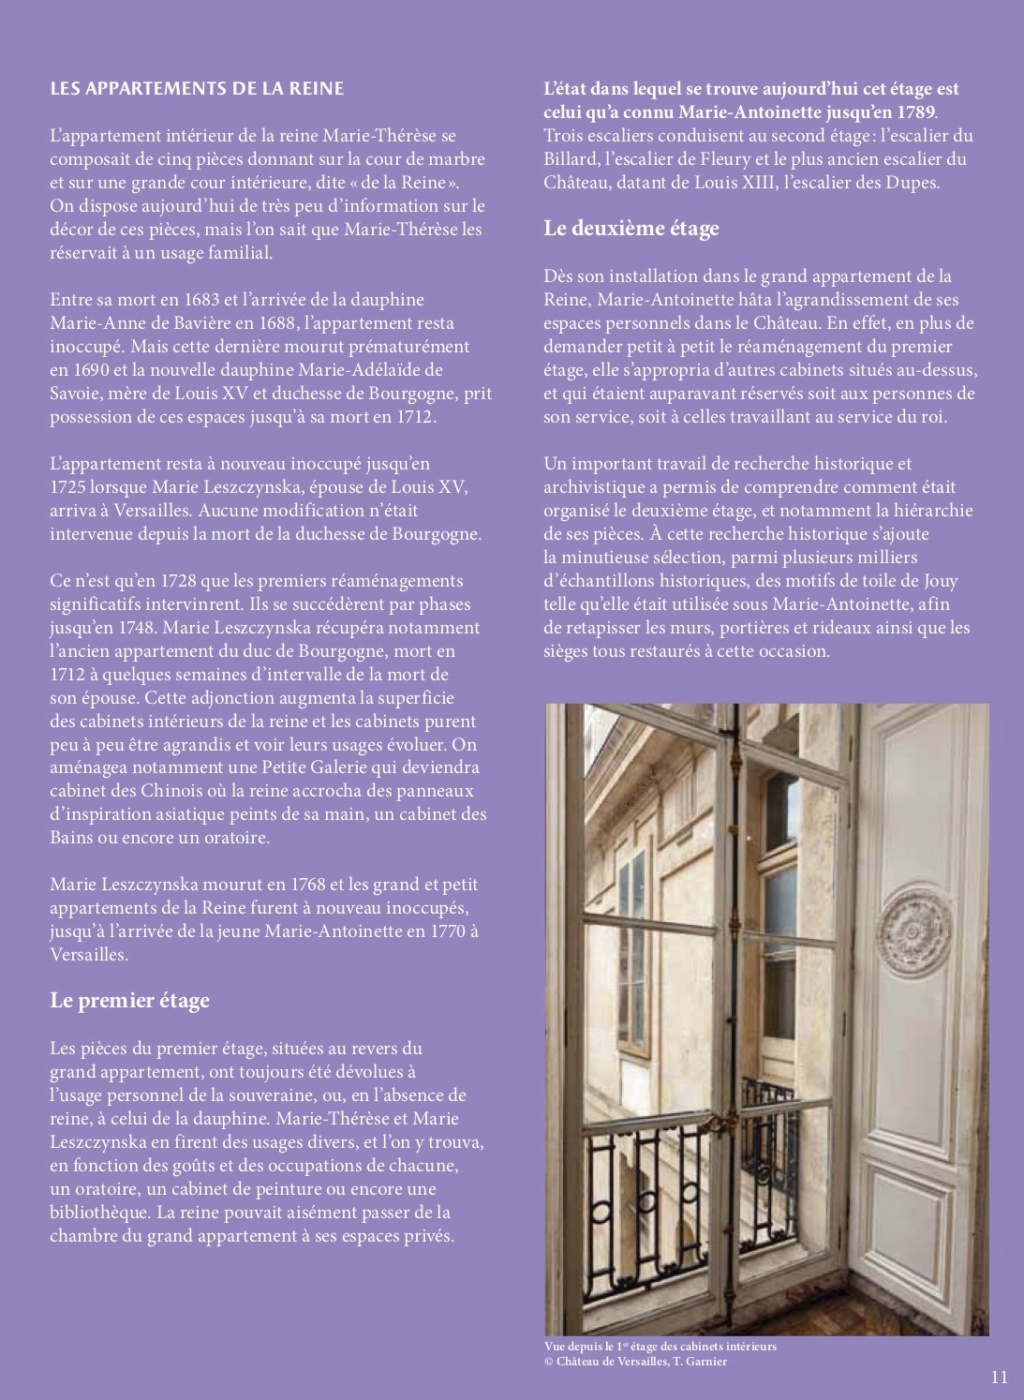 Les cabinets intérieurs de Marie-Antoinette au château de Versailles - Page 3 Dp_cab12